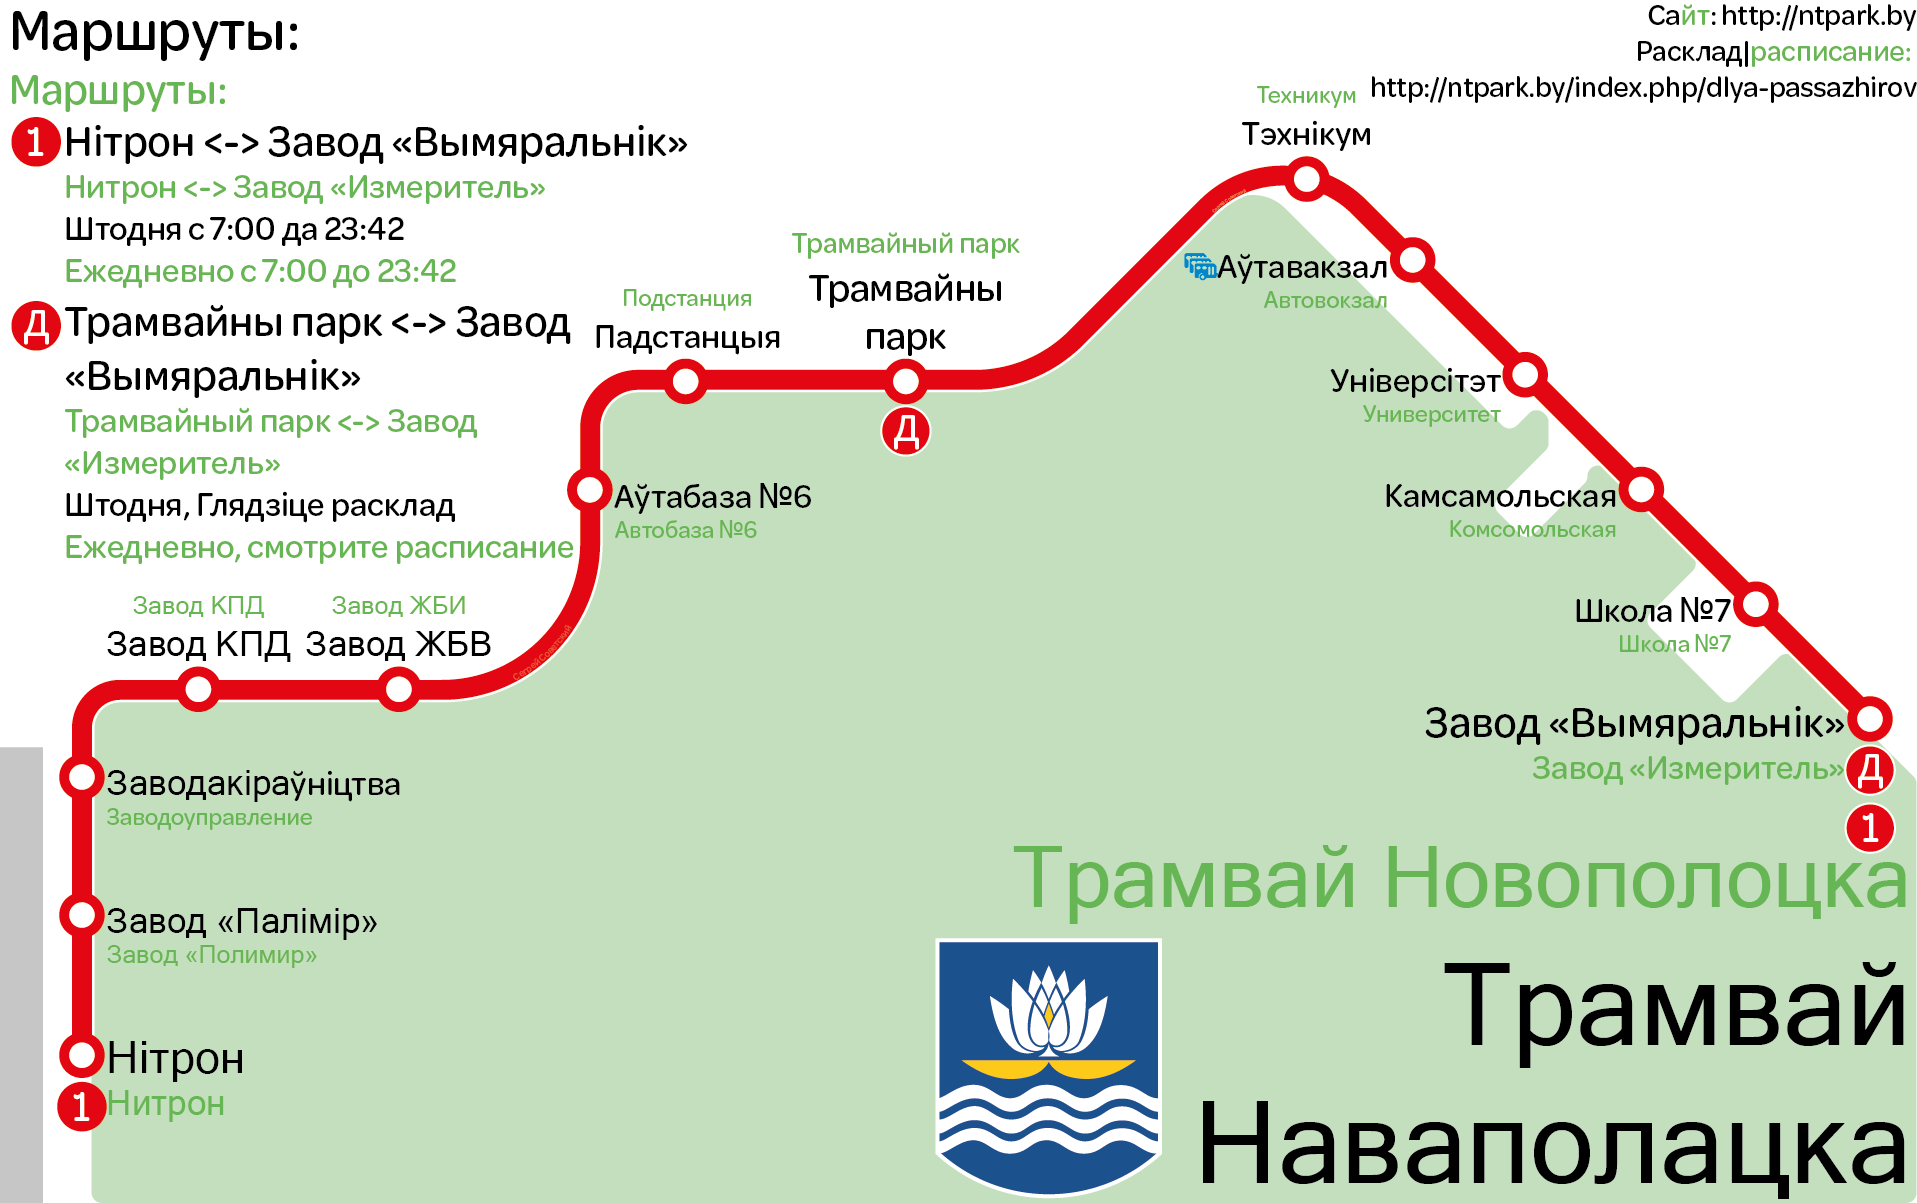 Novopolotsk — Maps